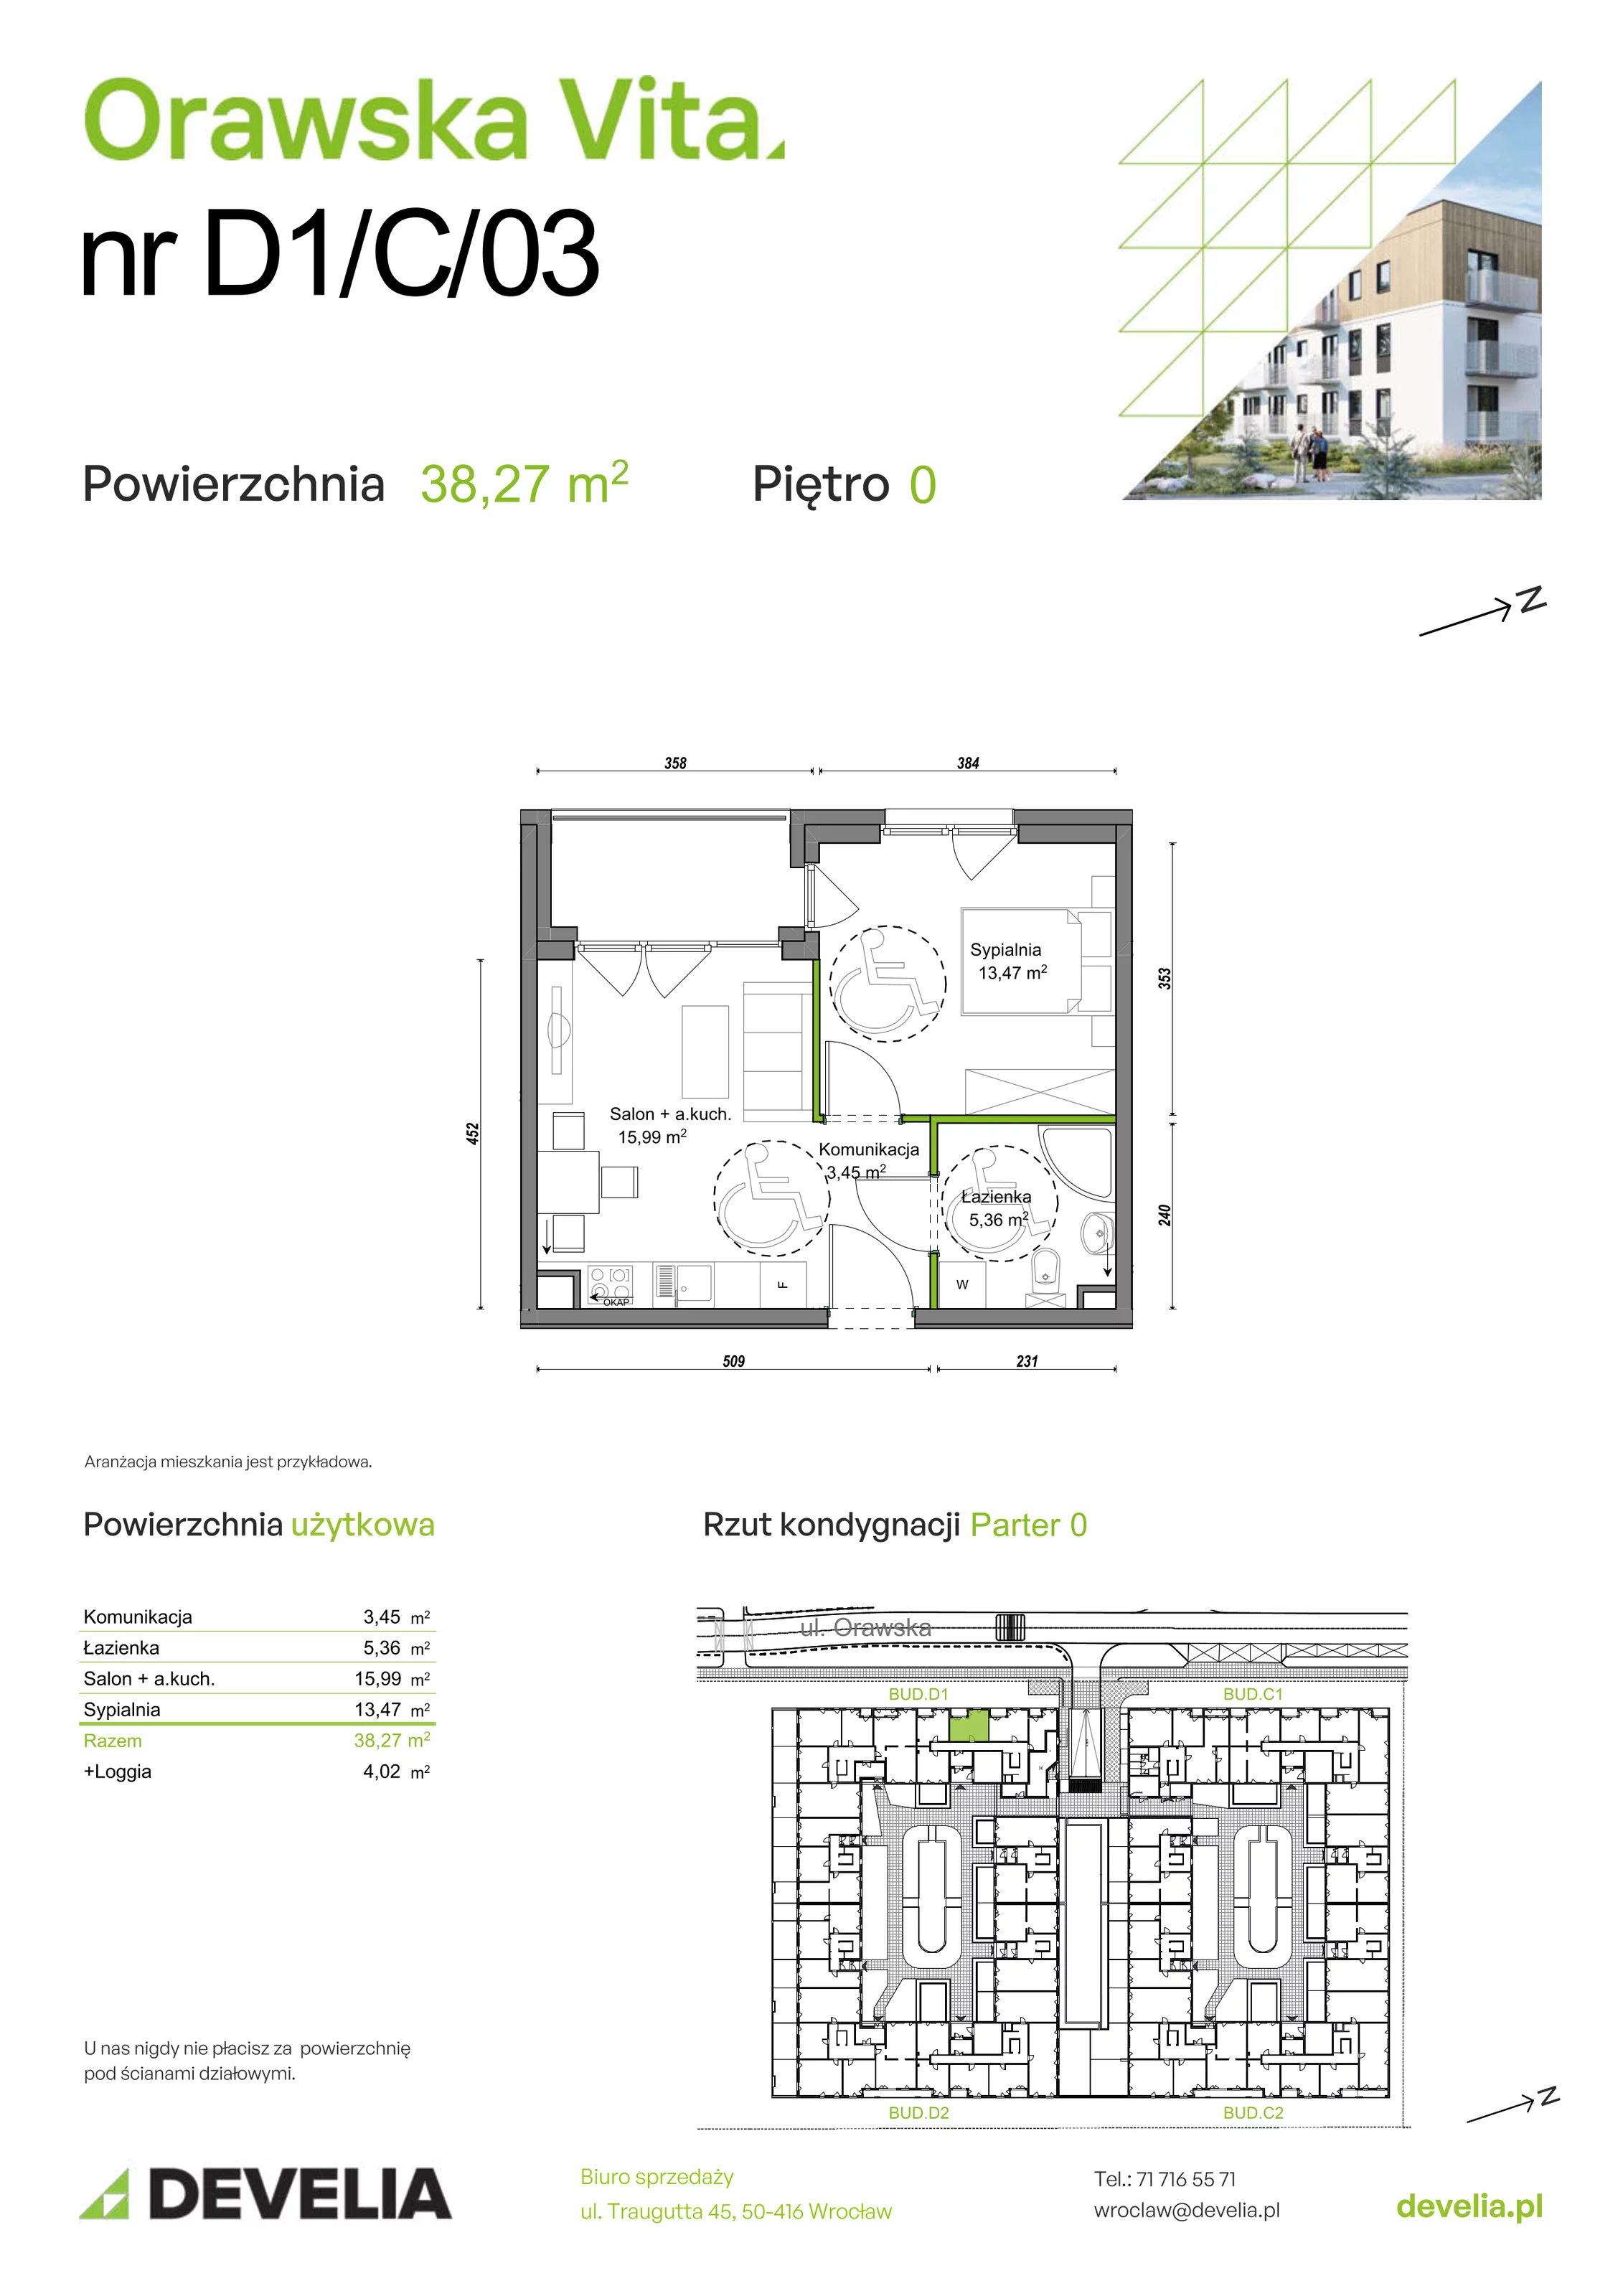 Mieszkanie 38,27 m², parter, oferta nr D1/C/03, Orawska Vita, Wrocław, Ołtaszyn, Krzyki, ul. Orawska 73